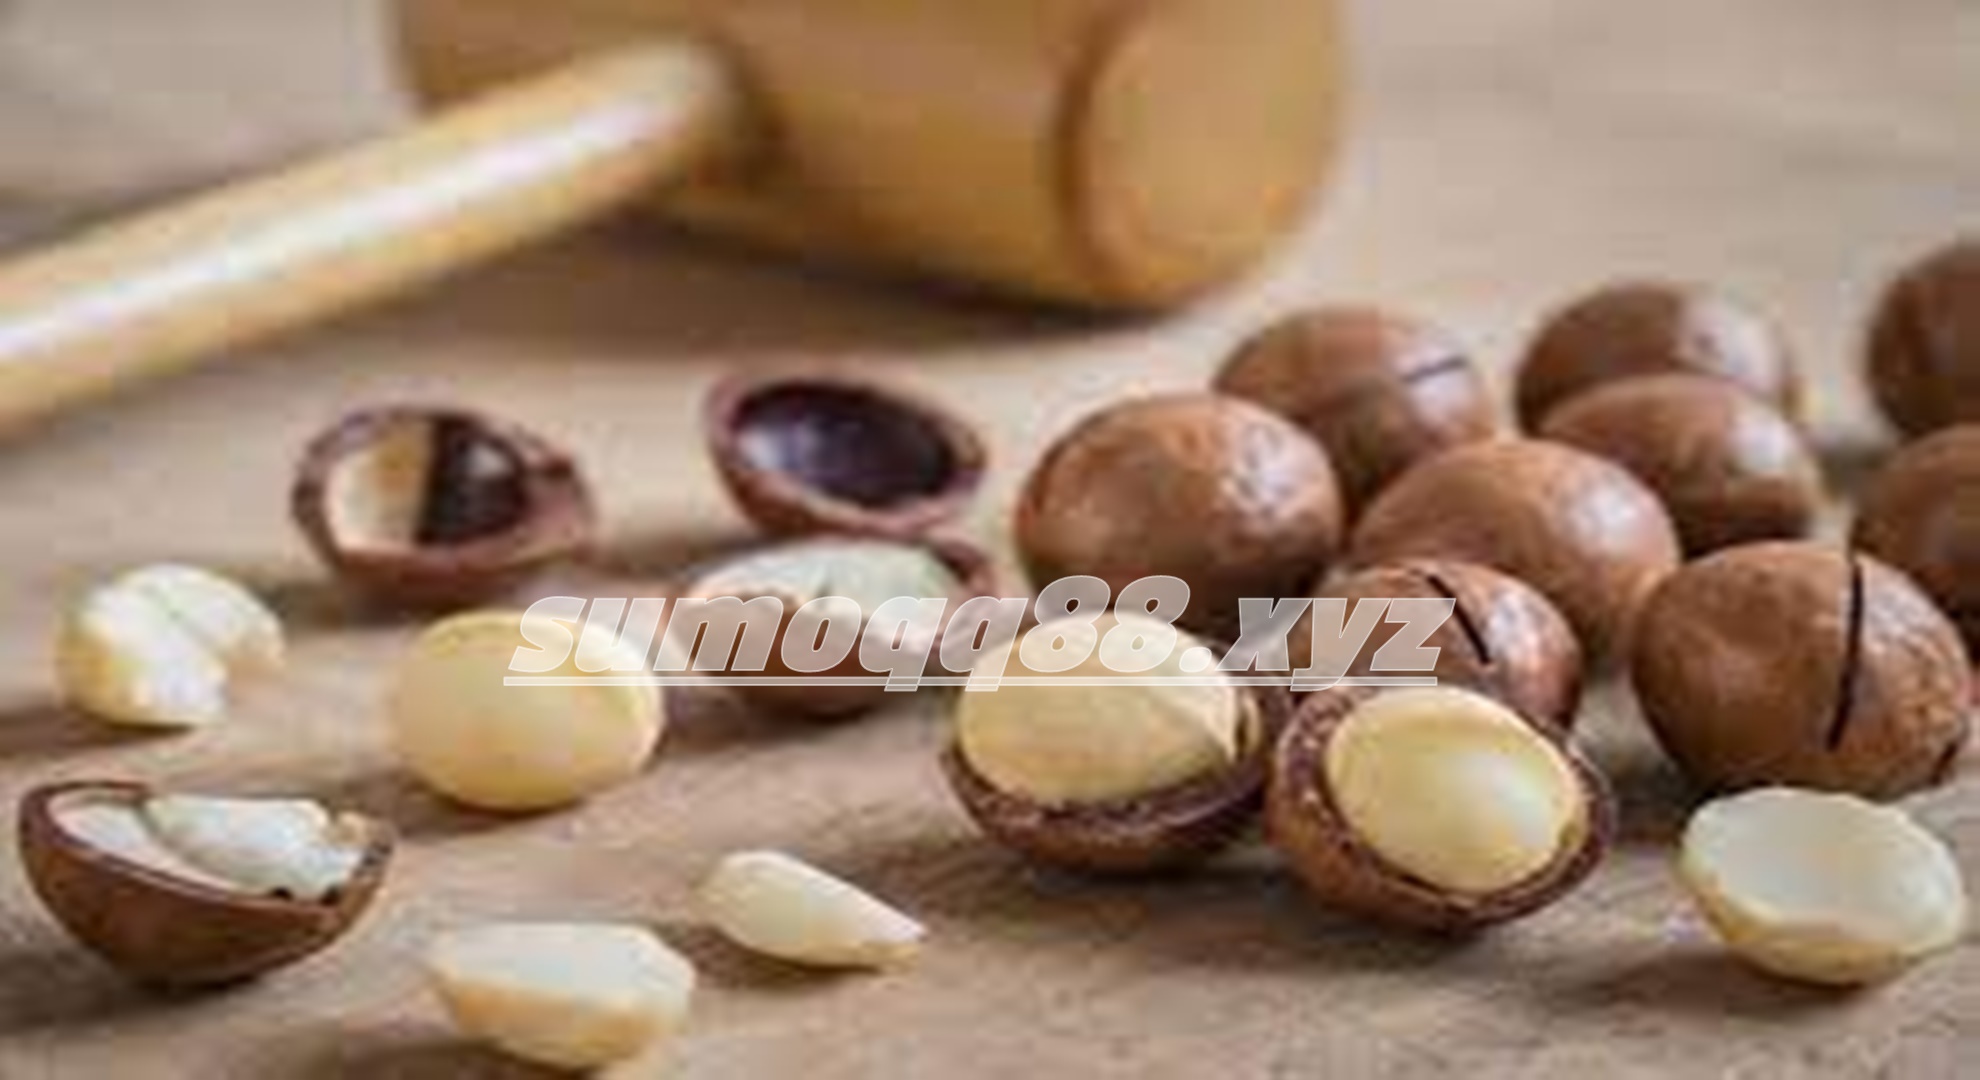 Manfaat Kacang Macadamia untuk Kesehatan